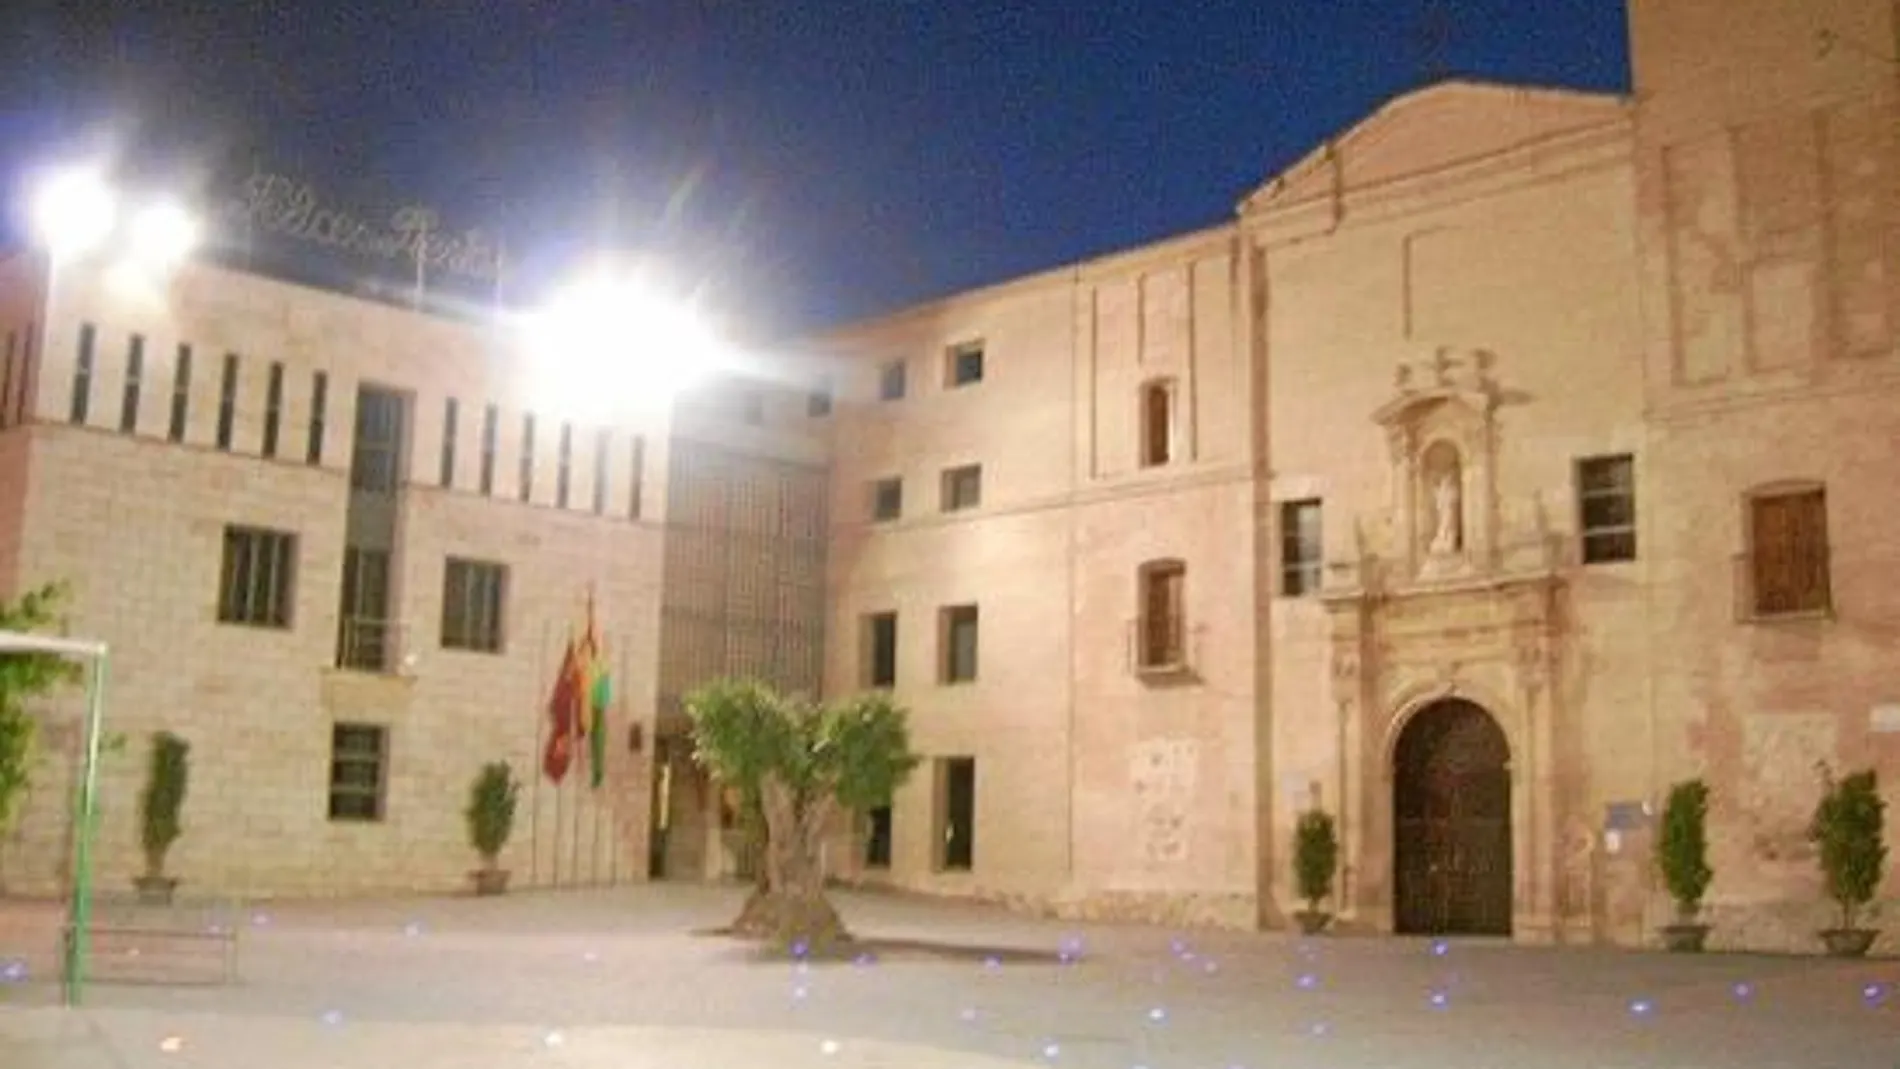 Vista de la fachada del Ayuntamiento de la localidad murciana de Beniel